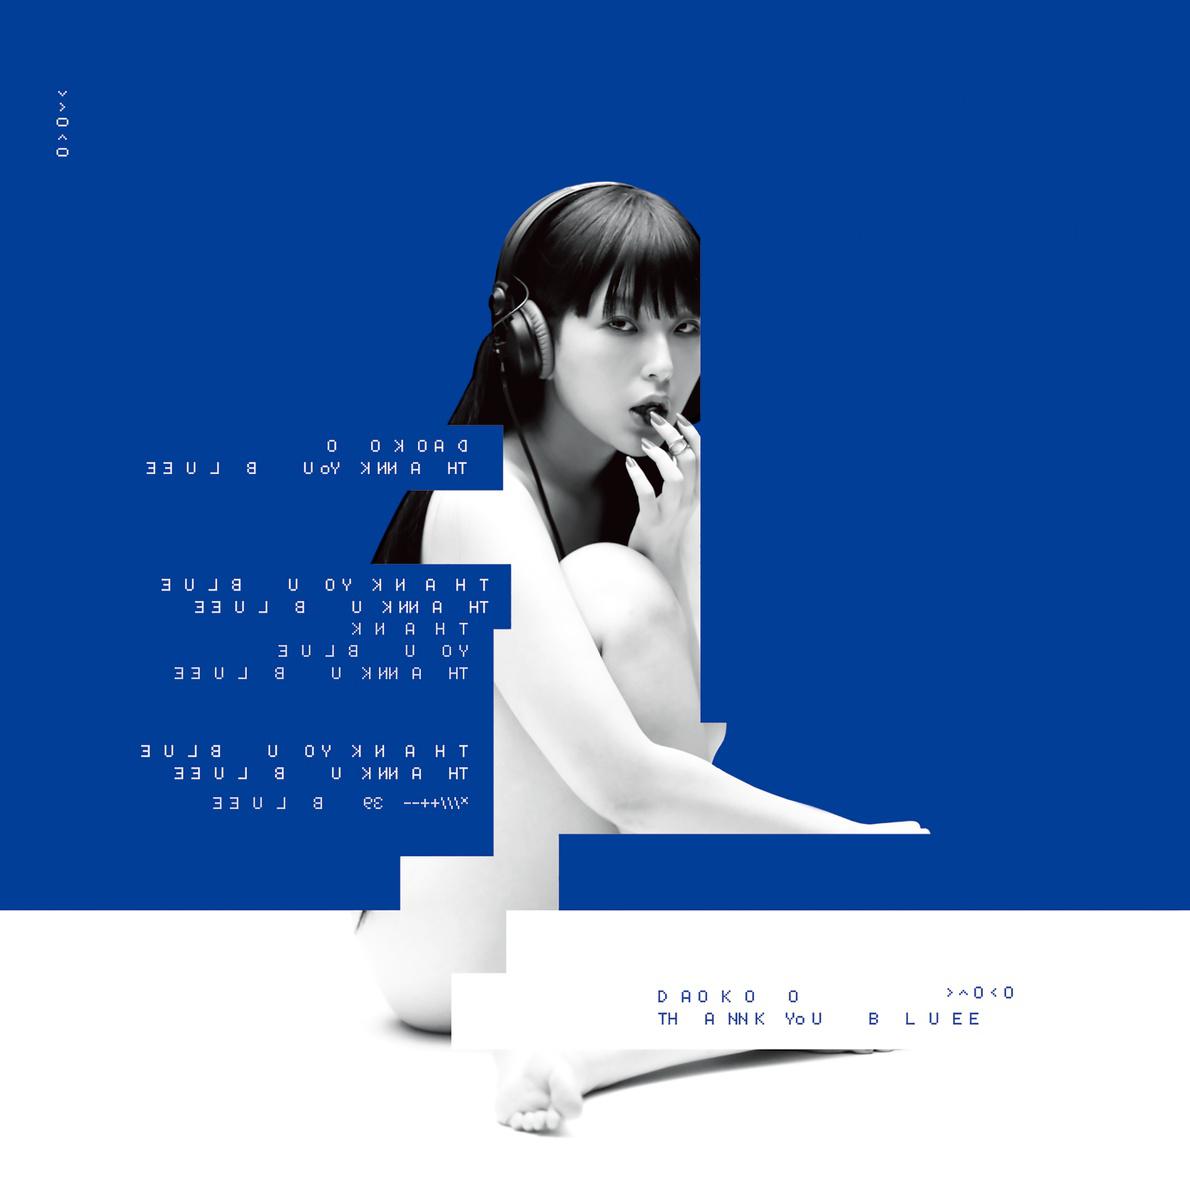 ゆめみてたのあたし歌词 歌手Daoko-专辑THANK YOU BLUE-单曲《ゆめみてたのあたし》LRC歌词下载